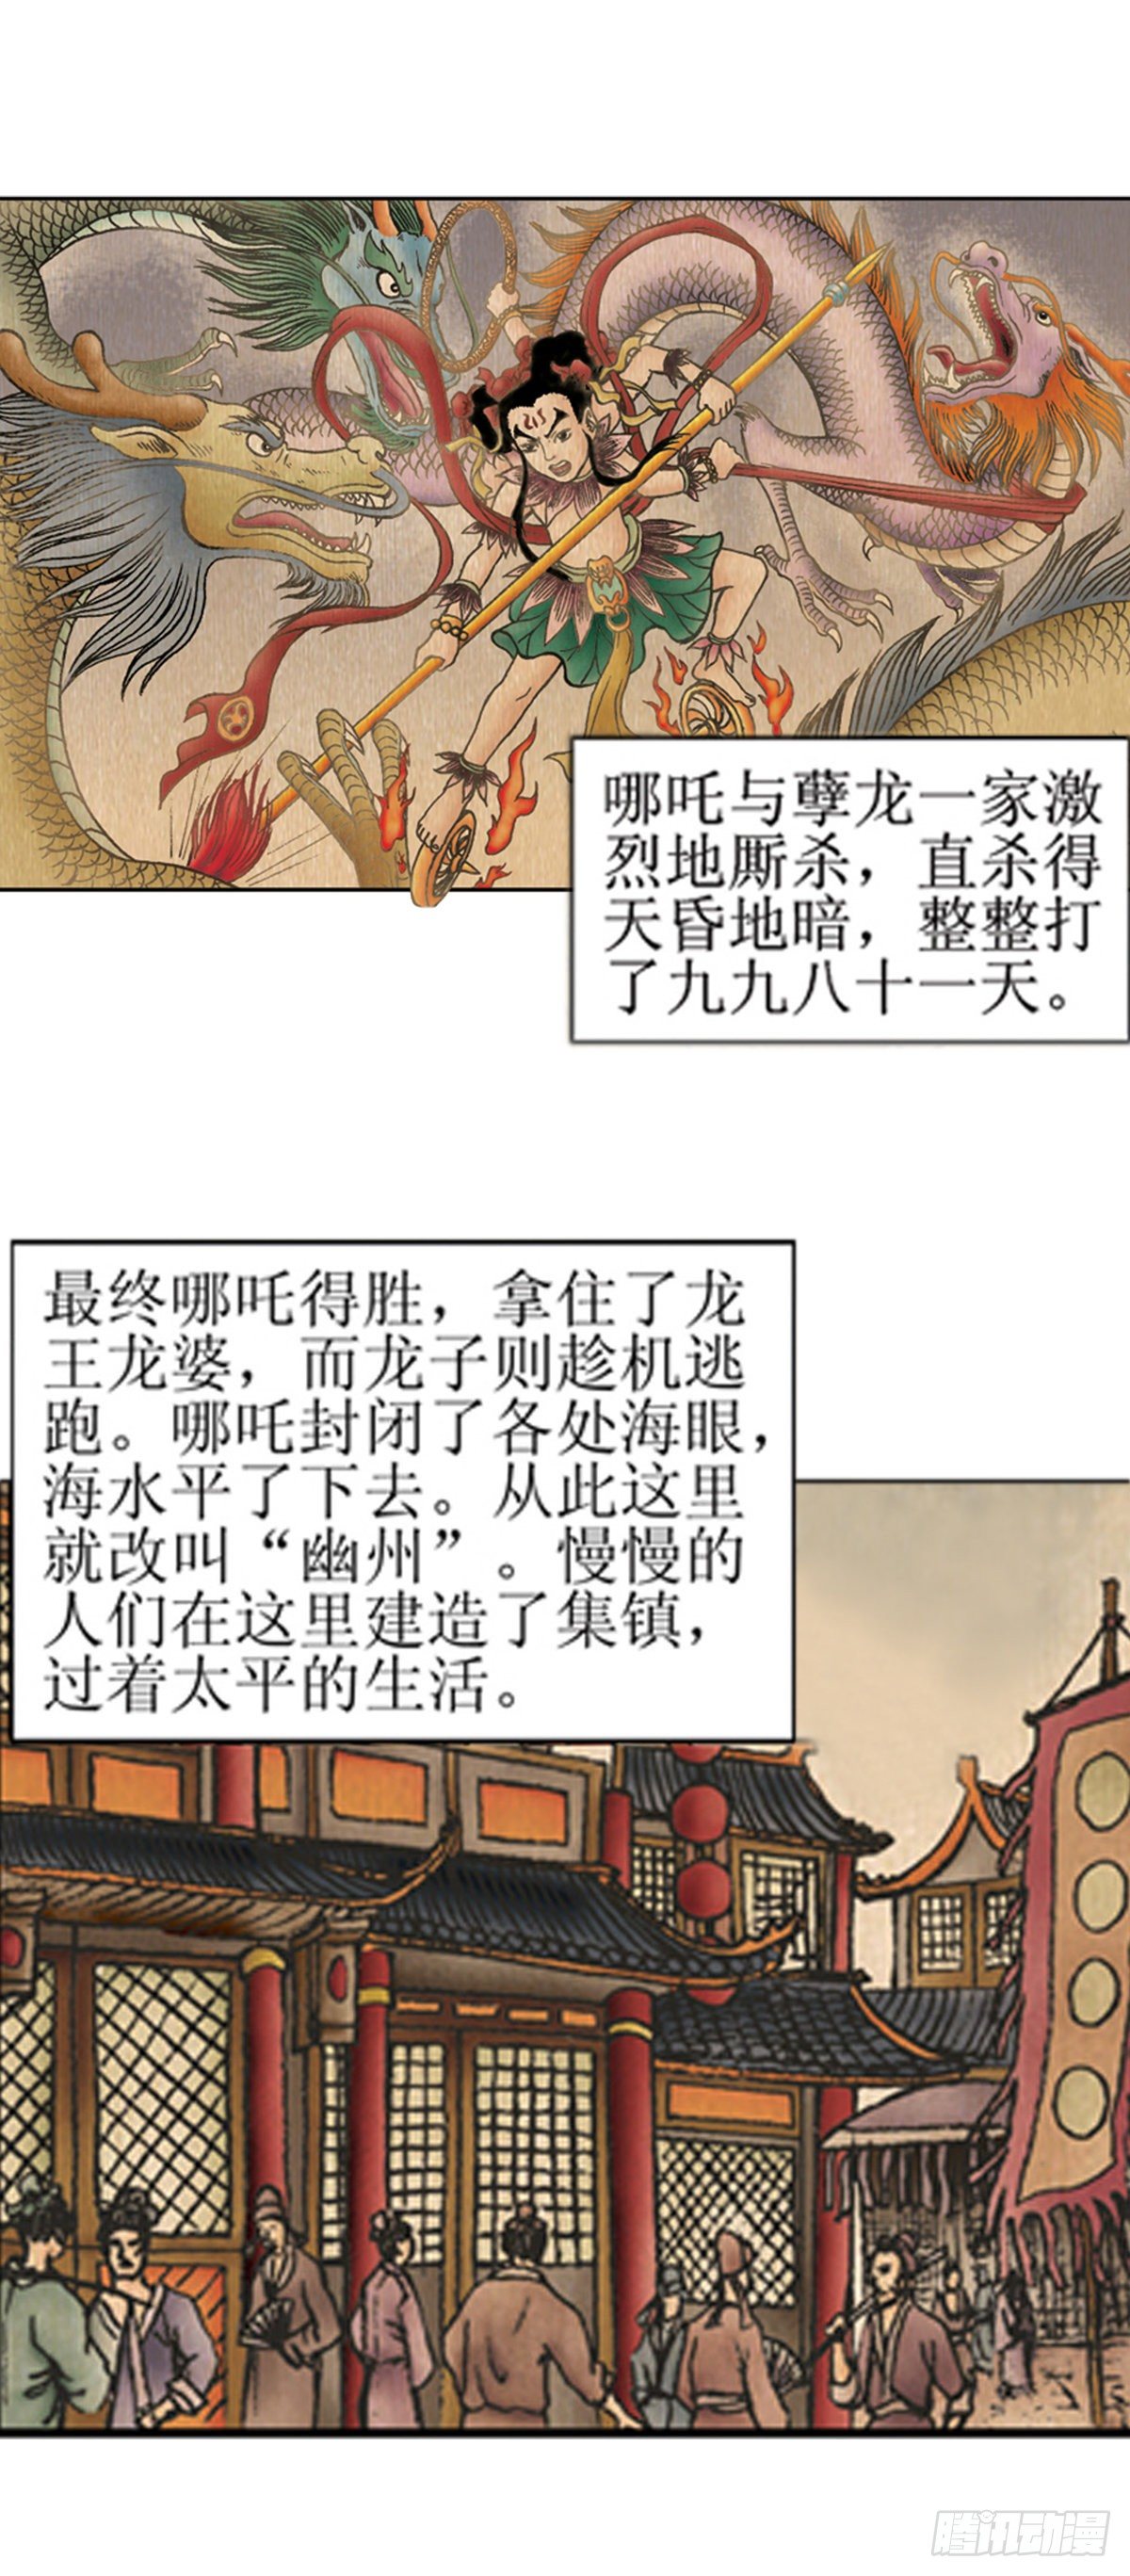 經典傳承—中國好故事 - 老北京的傳說 1 - 3